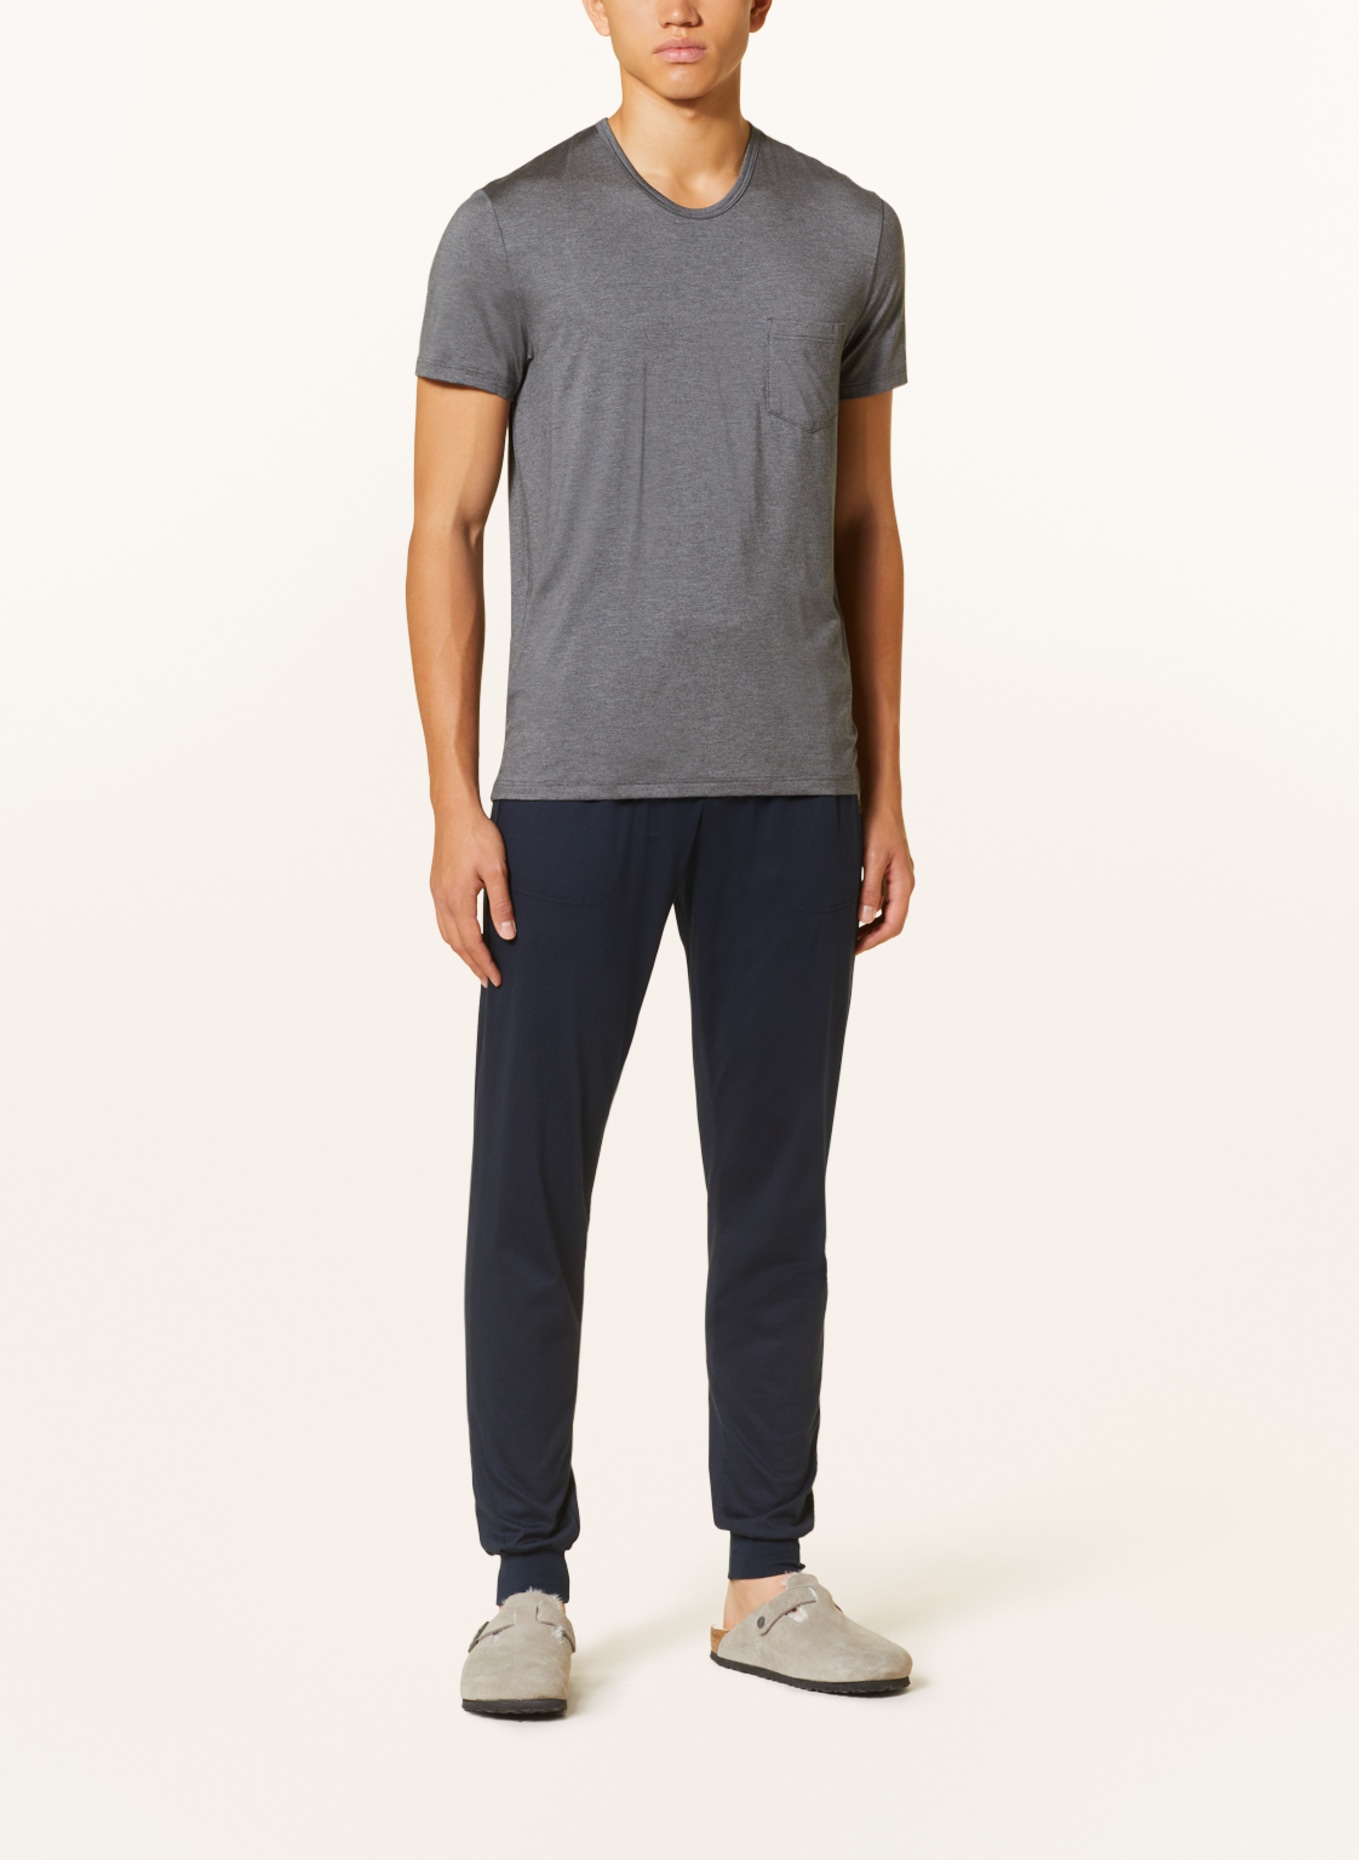 mey Pajama shirt series JEFFERSON MODAL, Color: GRAY (Image 2)